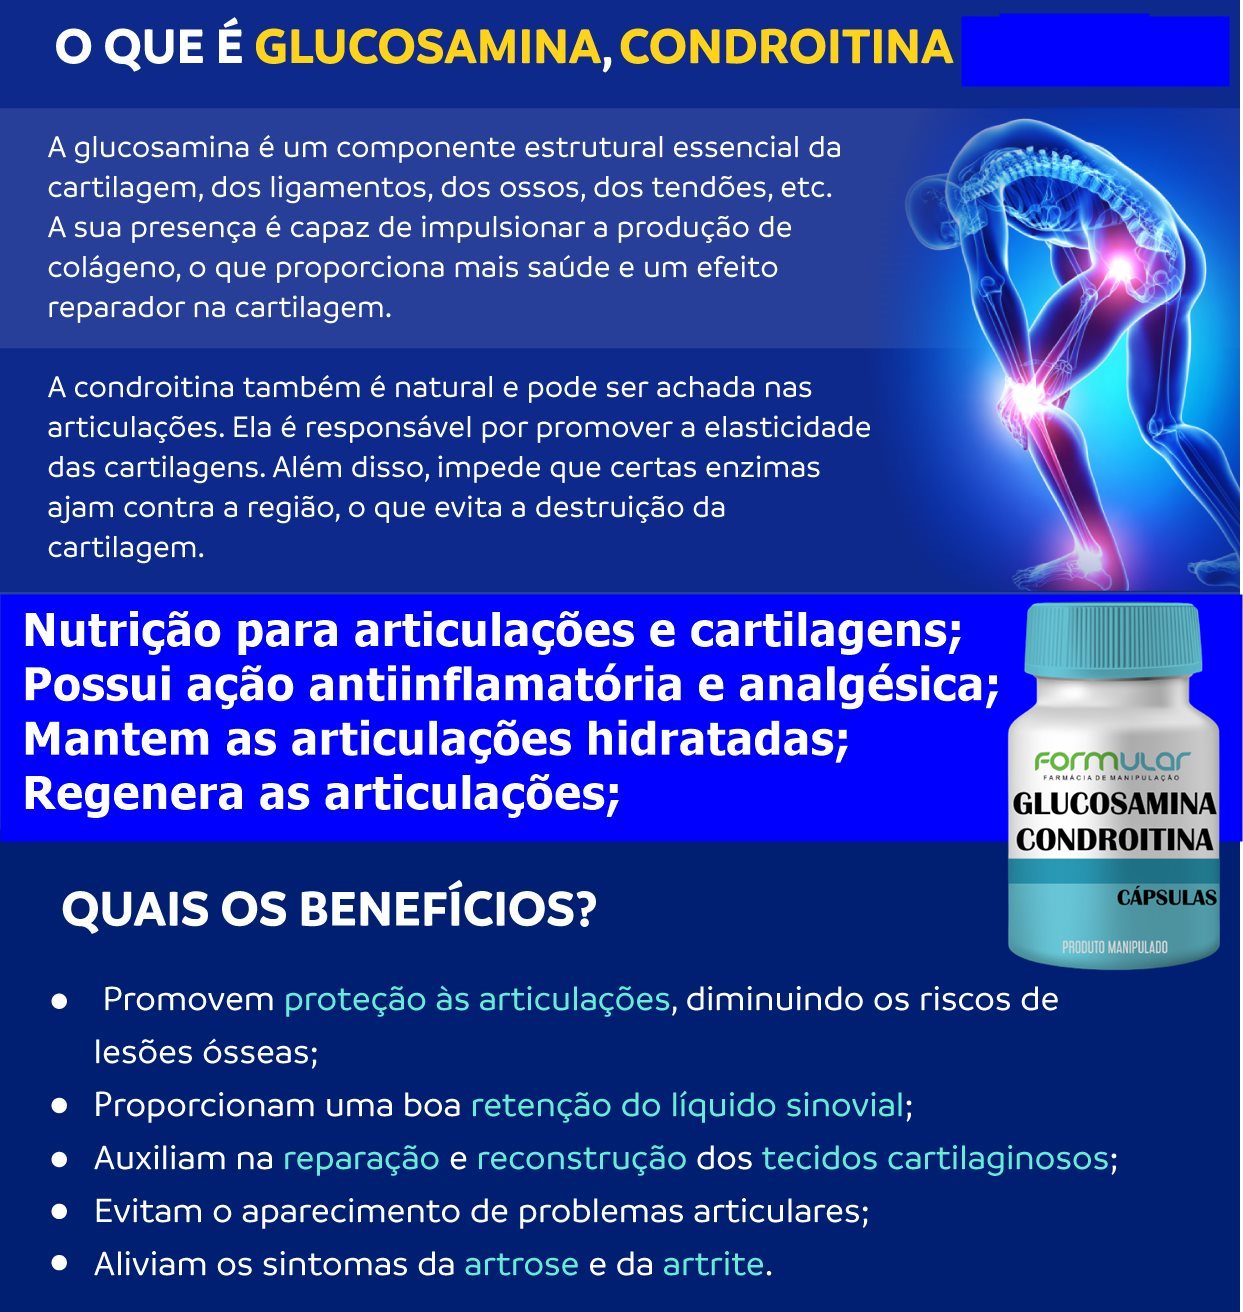 Glucosamina 500 Mg + Condroitina 400Mg + MSM 500mg - Cápsulas (Regenera as articulações)